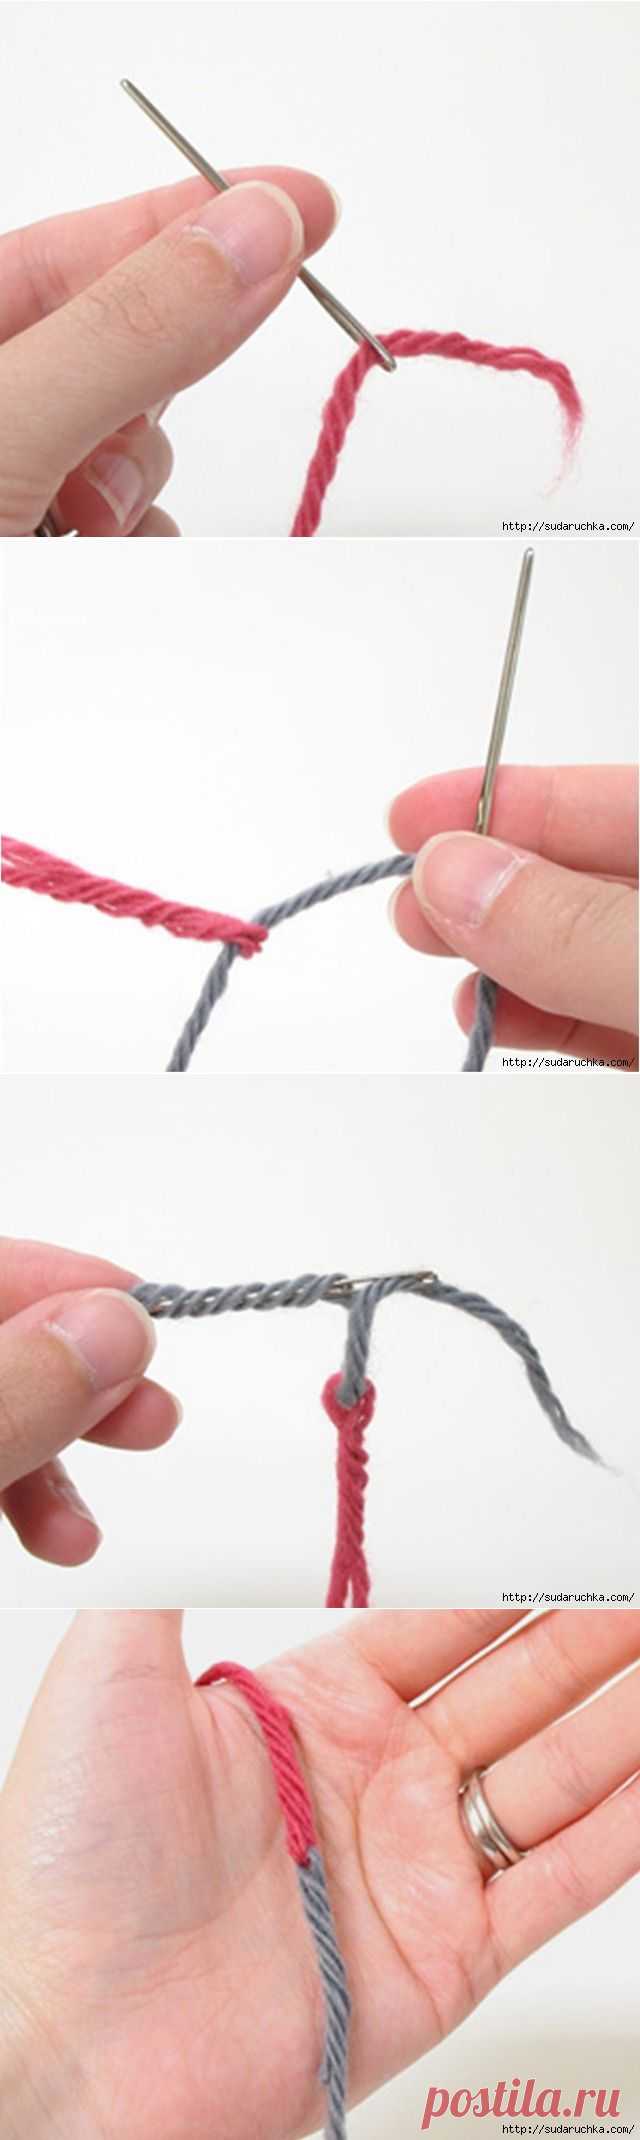 Соединение нитками 6. Узел для вязания спицами. Вязание узелками. Соединить нити без узла. Как вязать узелки спицами.